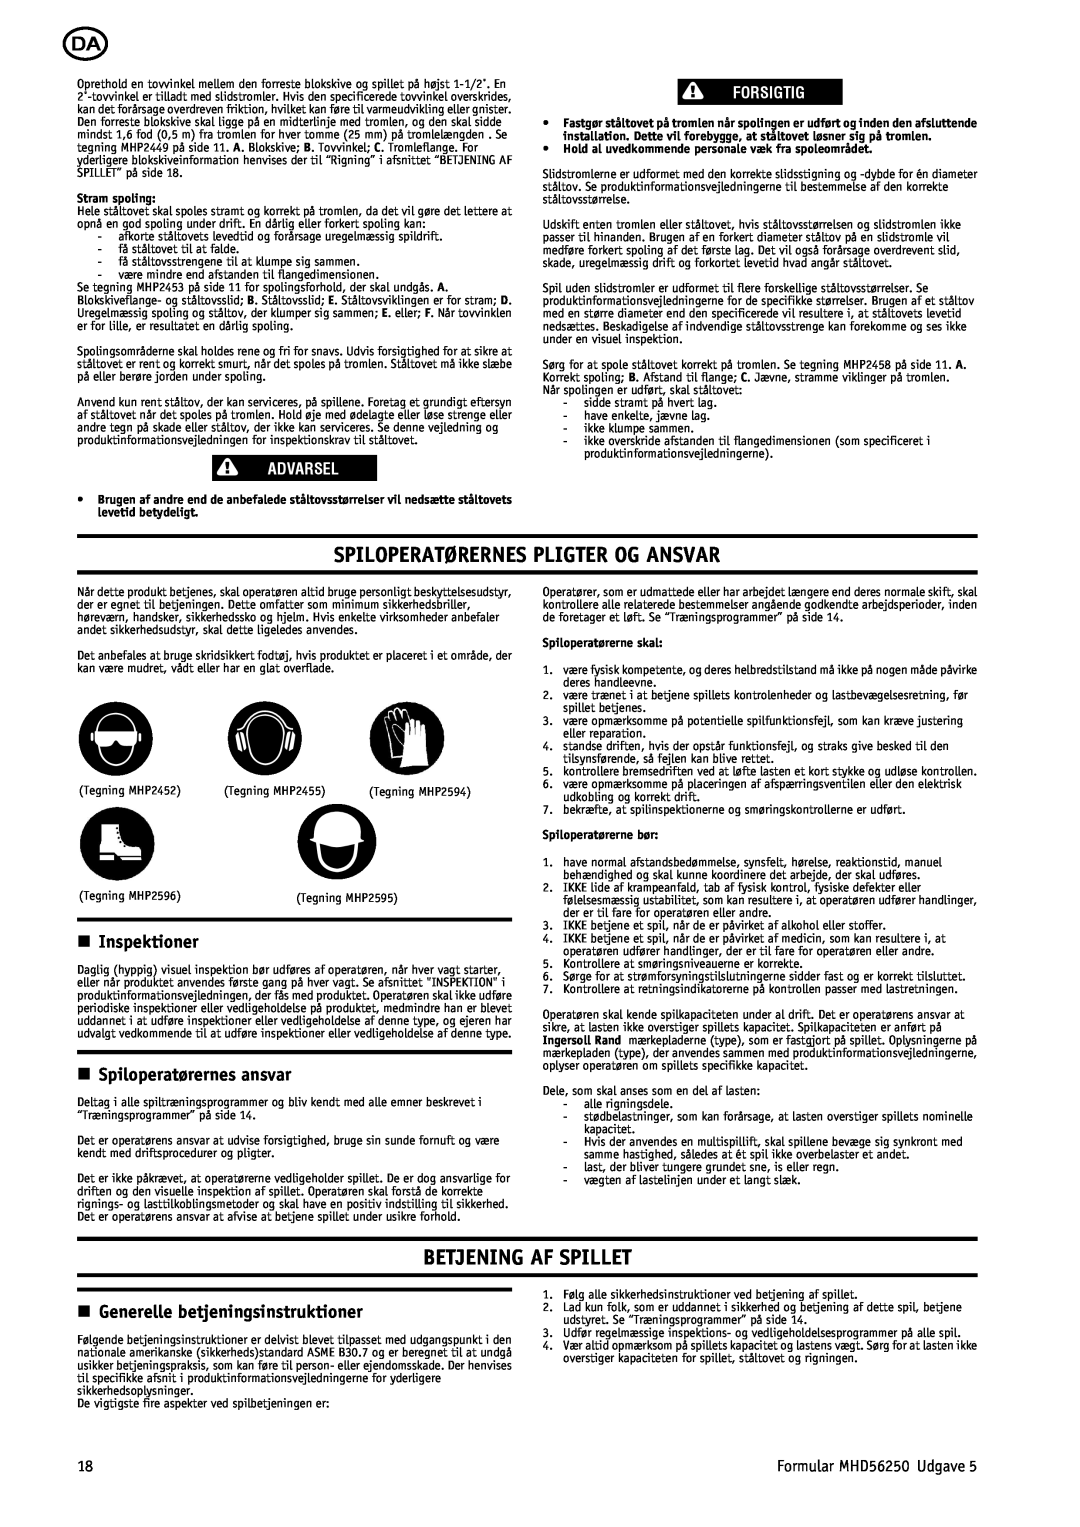 Ingersoll-Rand MHD56250 Spiloperatørernes Pligter Og Ansvar, Betjening Af Spillet, n Inspektioner, Advarsel, Forsigtig 